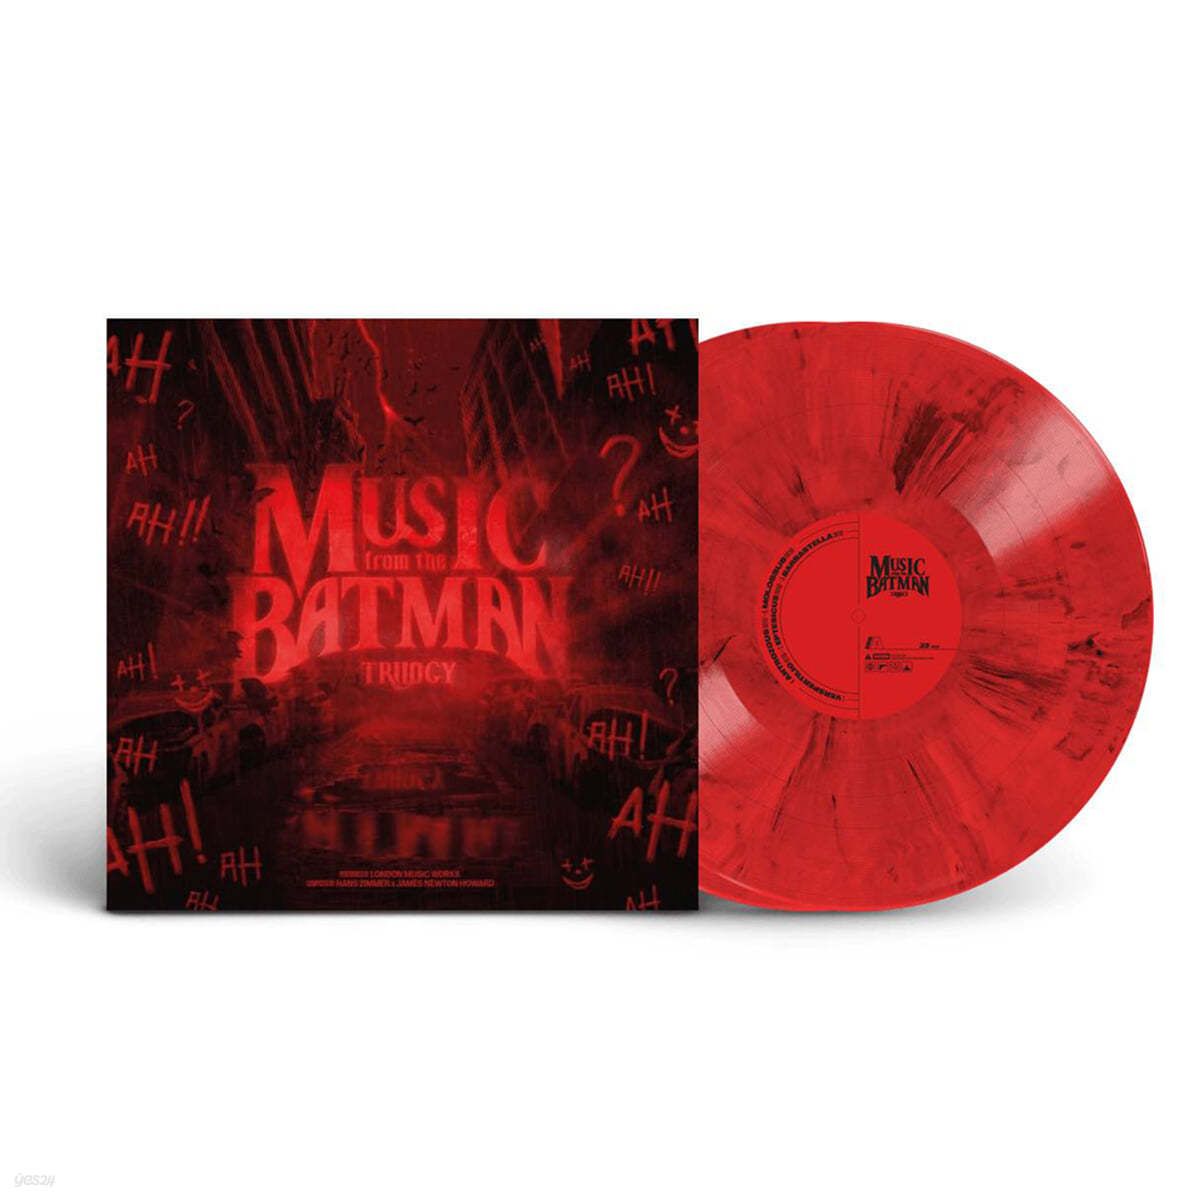 배트맨 영화음악 3부작 베스트 모음집 (Music From The Batman Trilogy by Hans Zimmer & James Newton Howard) [레드 마블 컬러 2LP]